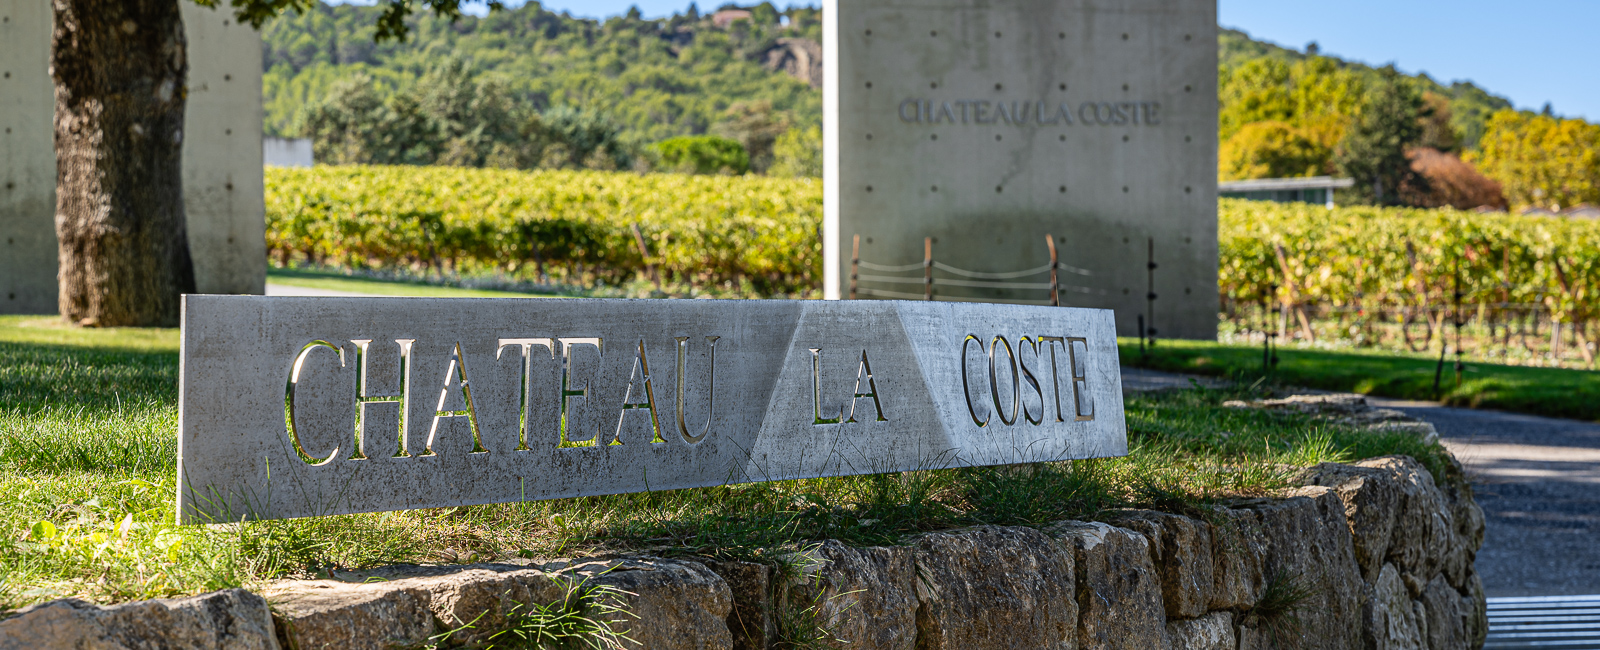 Château La Coste: Ein einzigartiges Kulturprojekt, das Kunst, Kulinarik, Wein und Natur harmonisch verbindet.